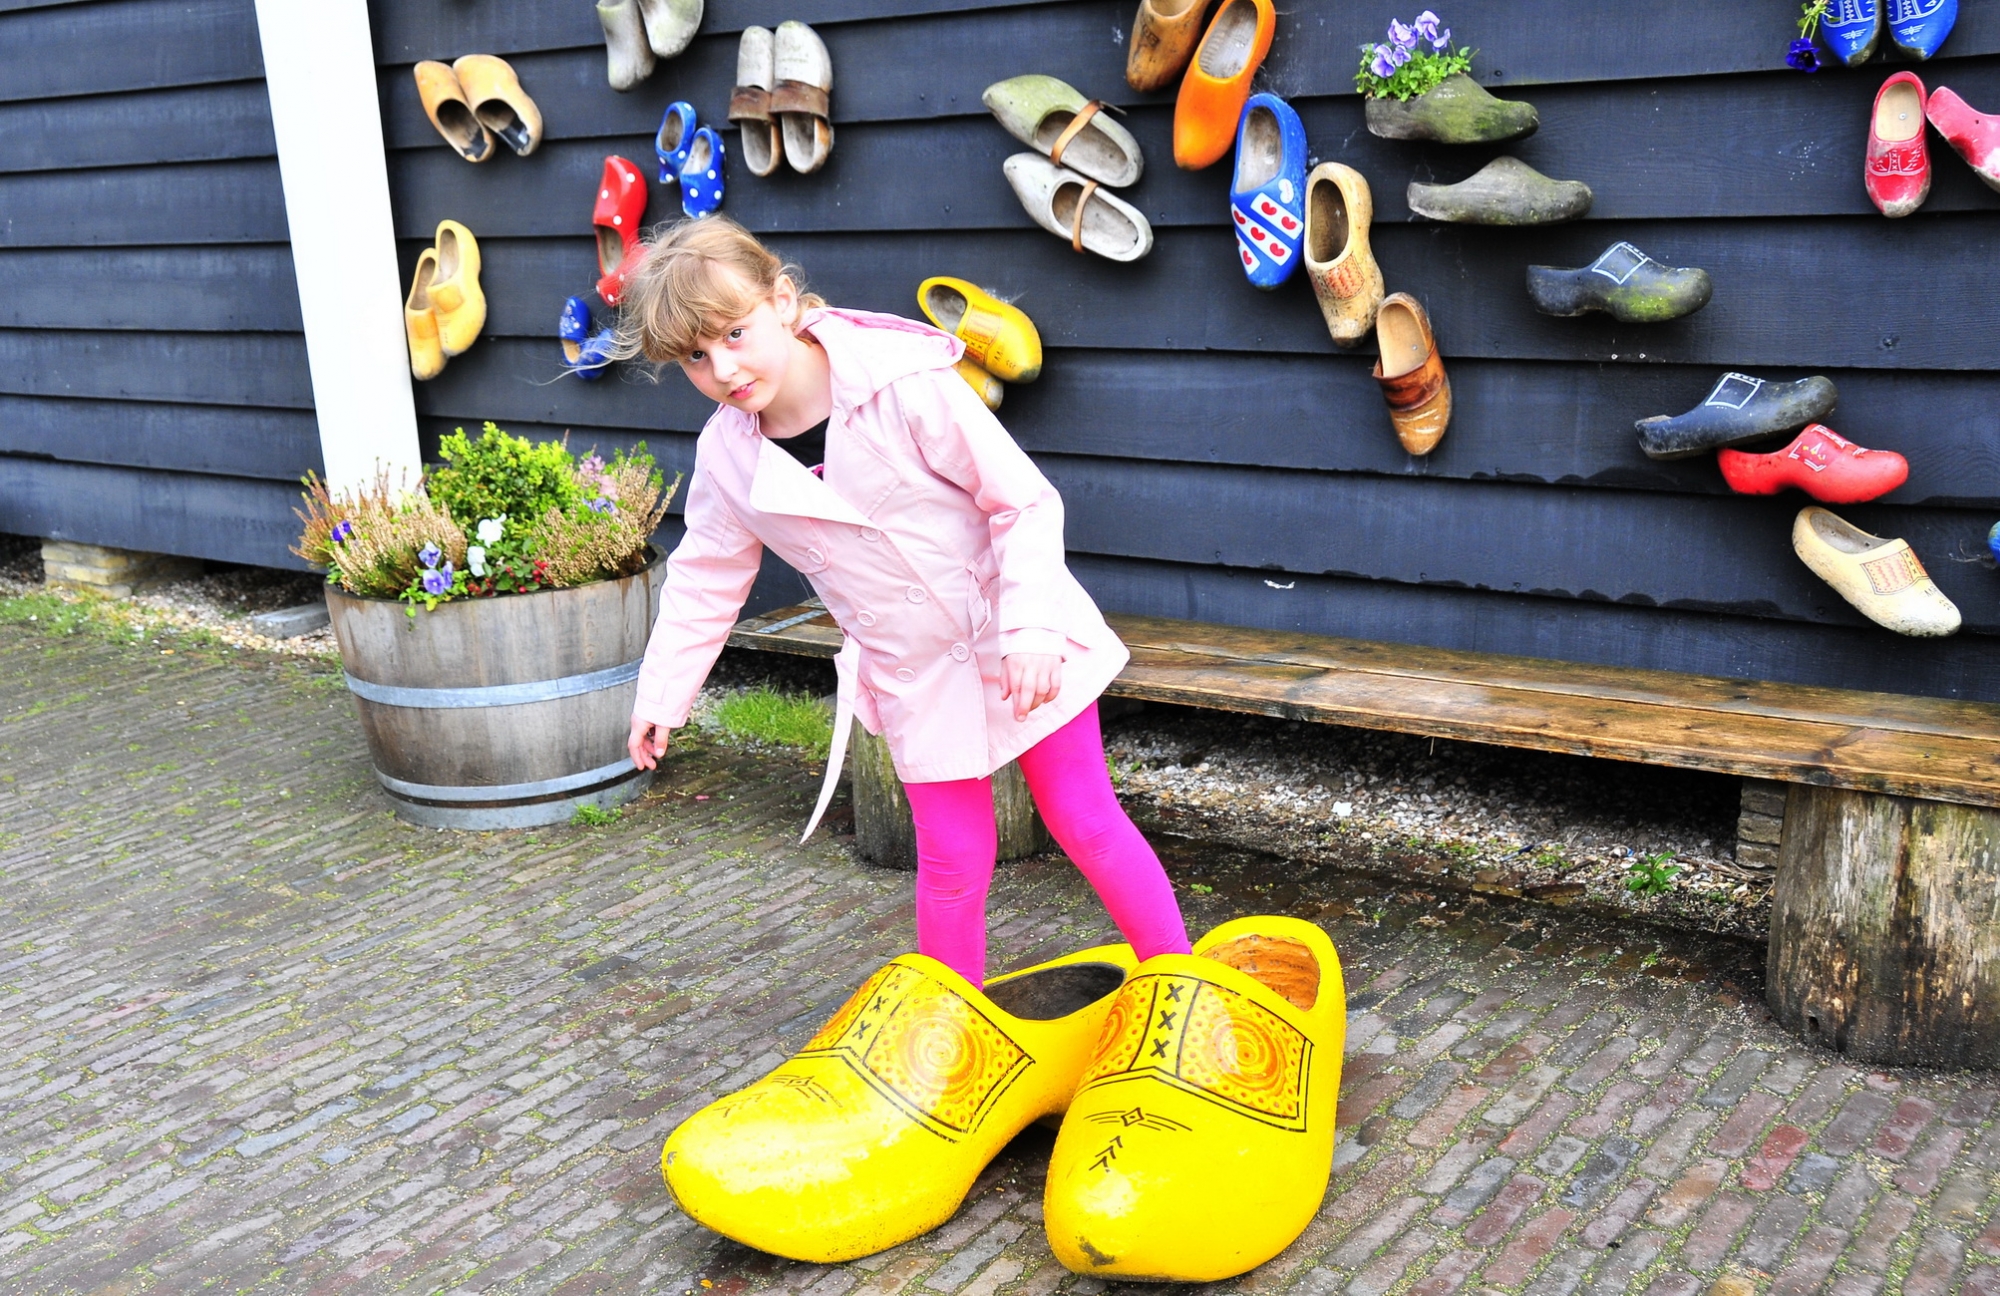 Chuyện về đôi giày gỗ clog nổi tiếng ở hà lan